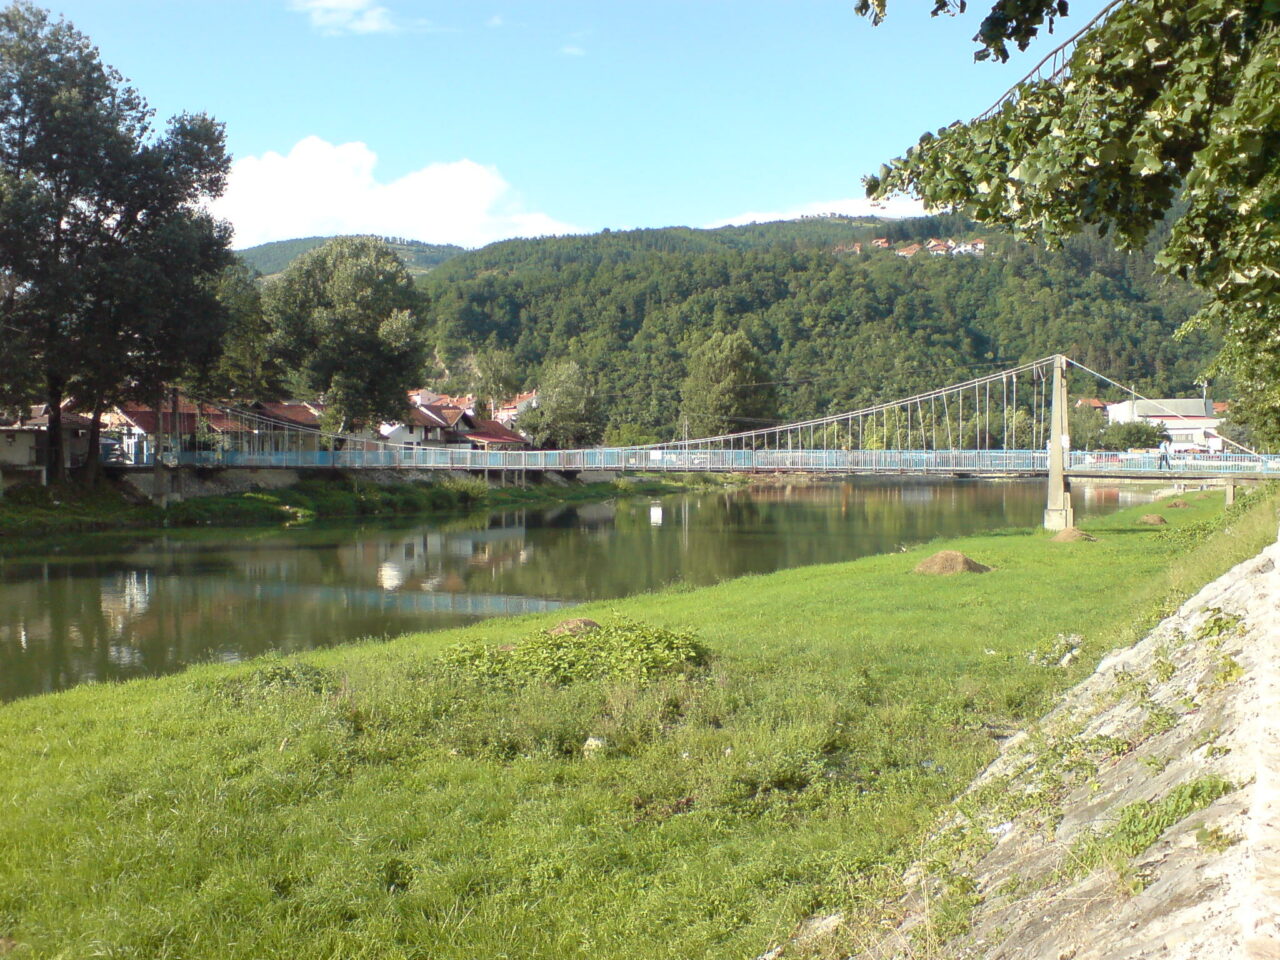 Suspension_Bridge_on_the_River_Lim_in_Prijepolje-1280x960.jpg